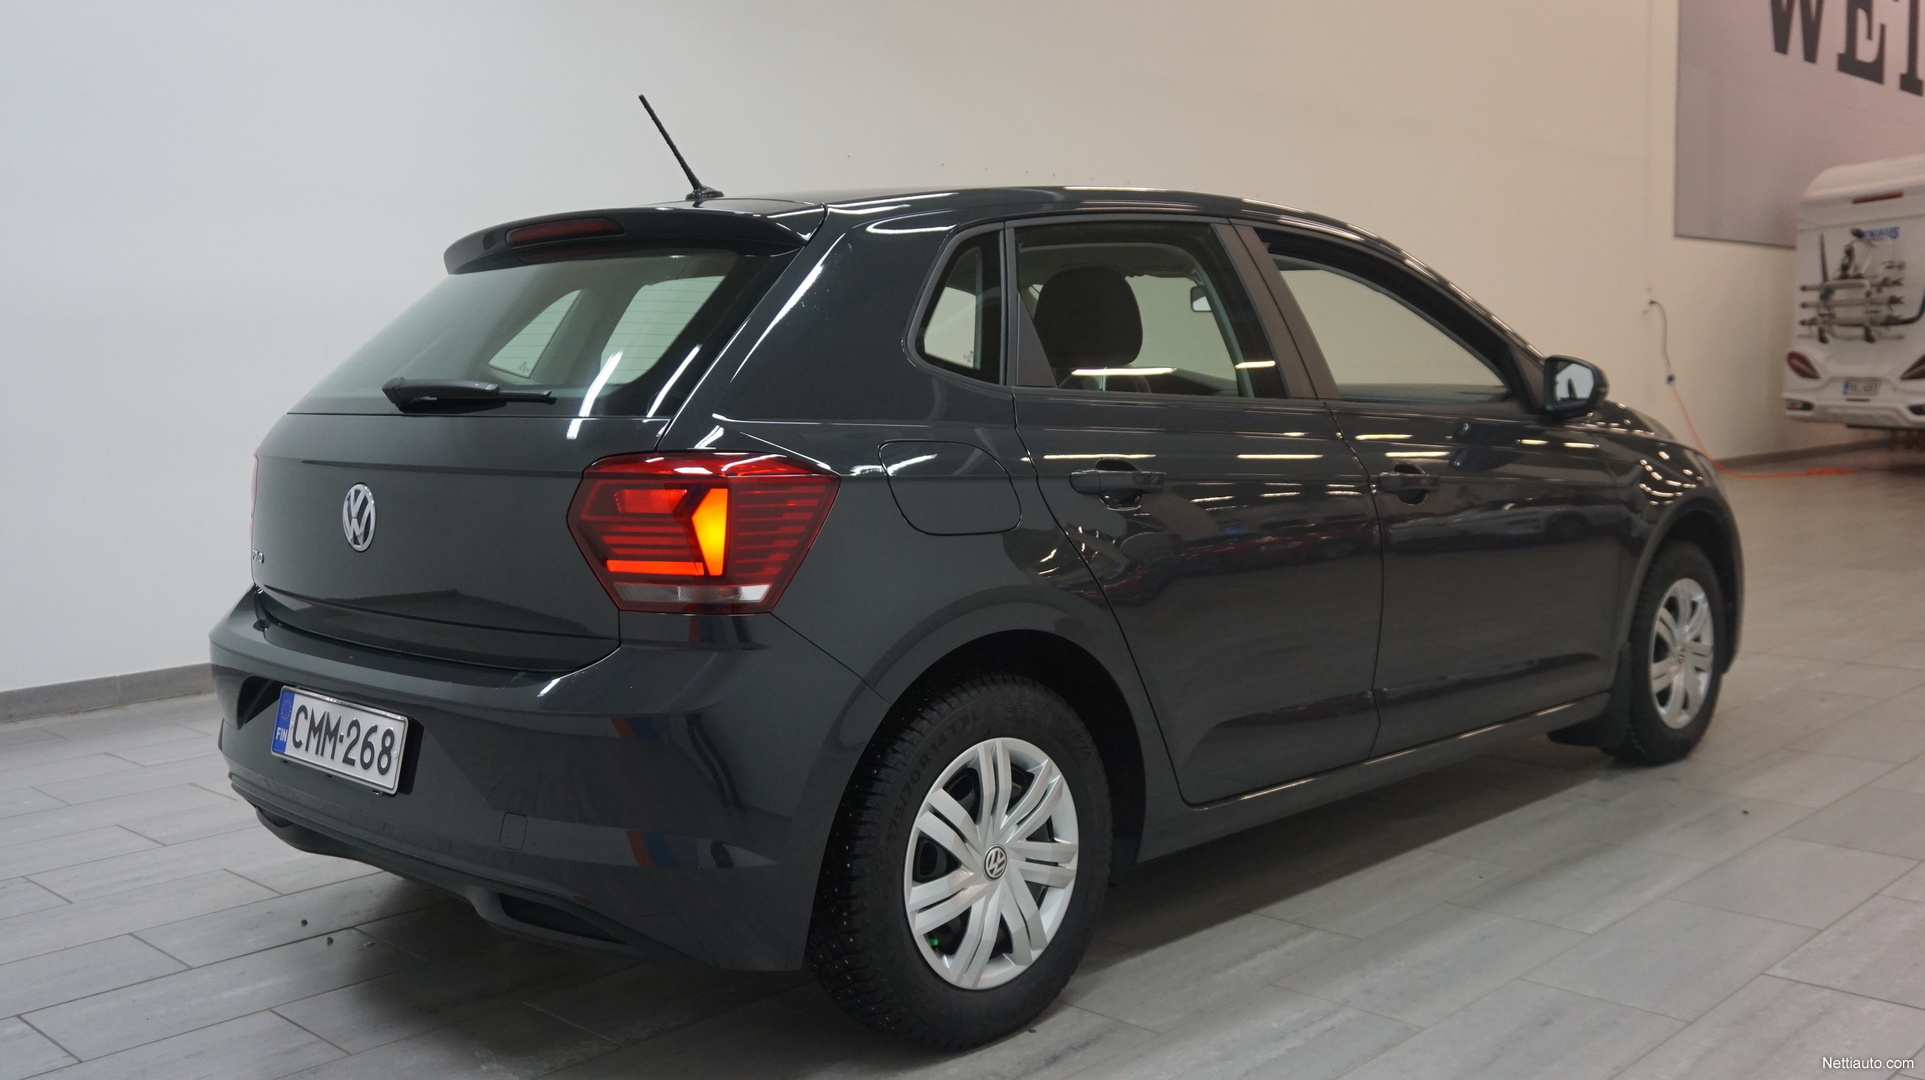 Volkswagen Polo Hatchback 2019 - Used vehicle - Nettiauto